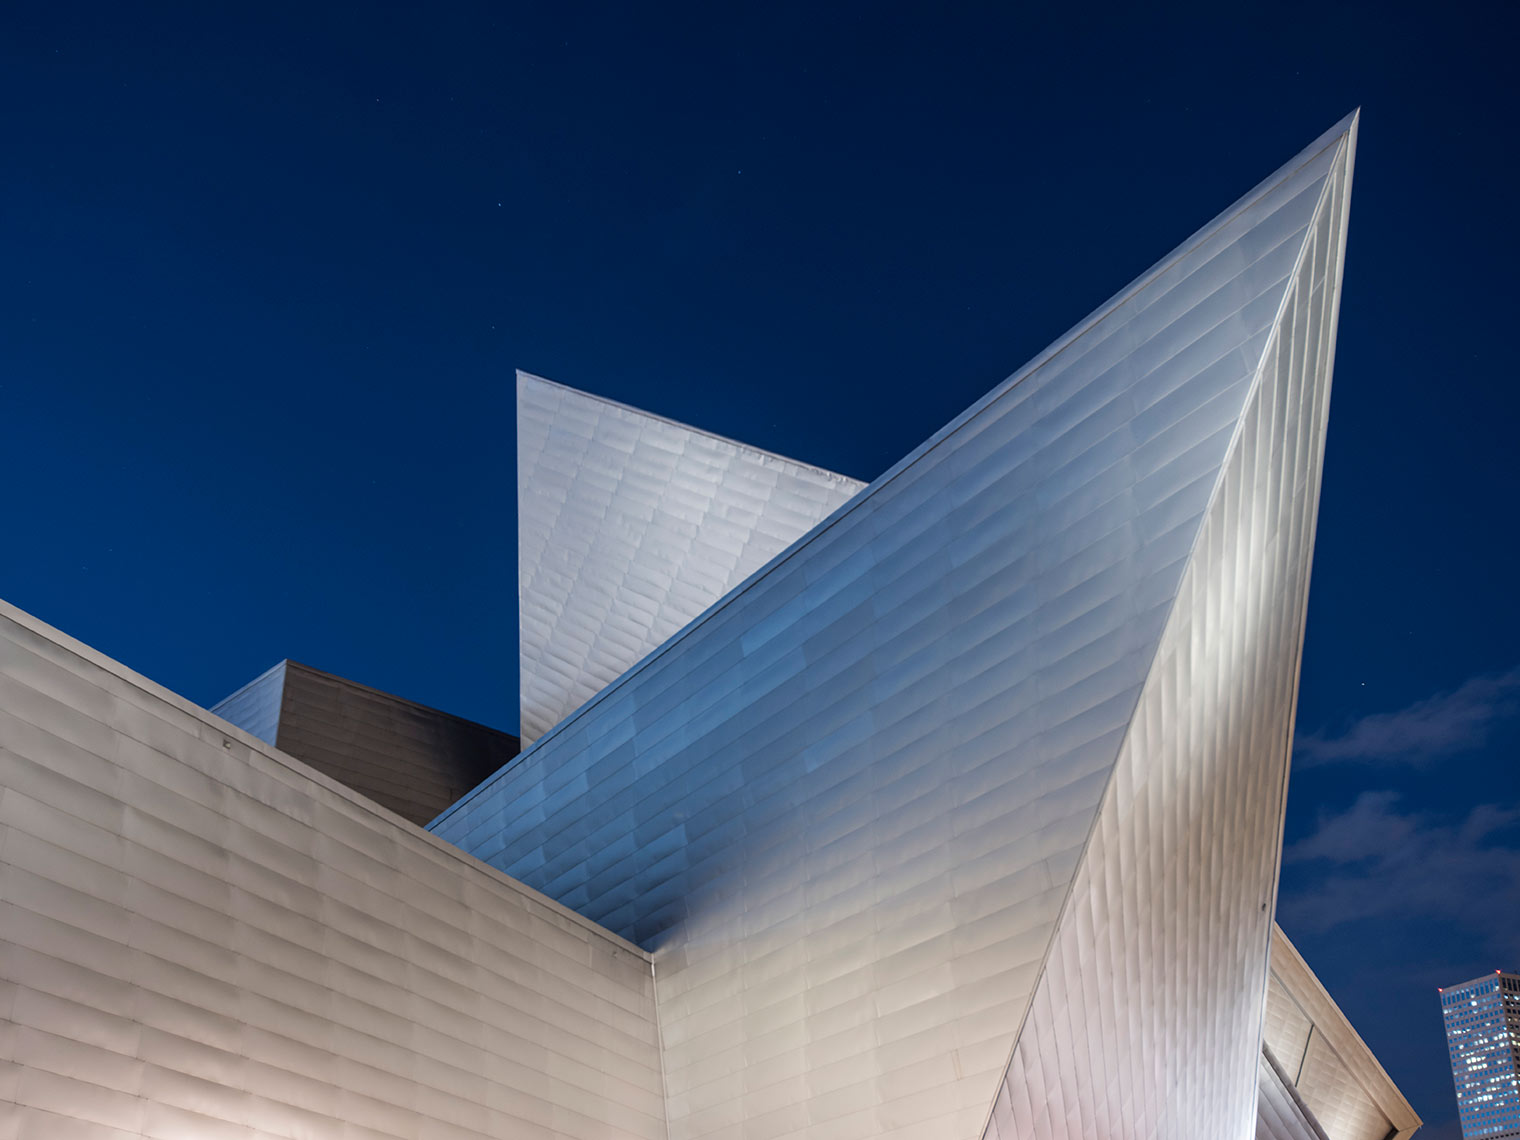 Denver Art Museum - Designed by Daniel Libeskind